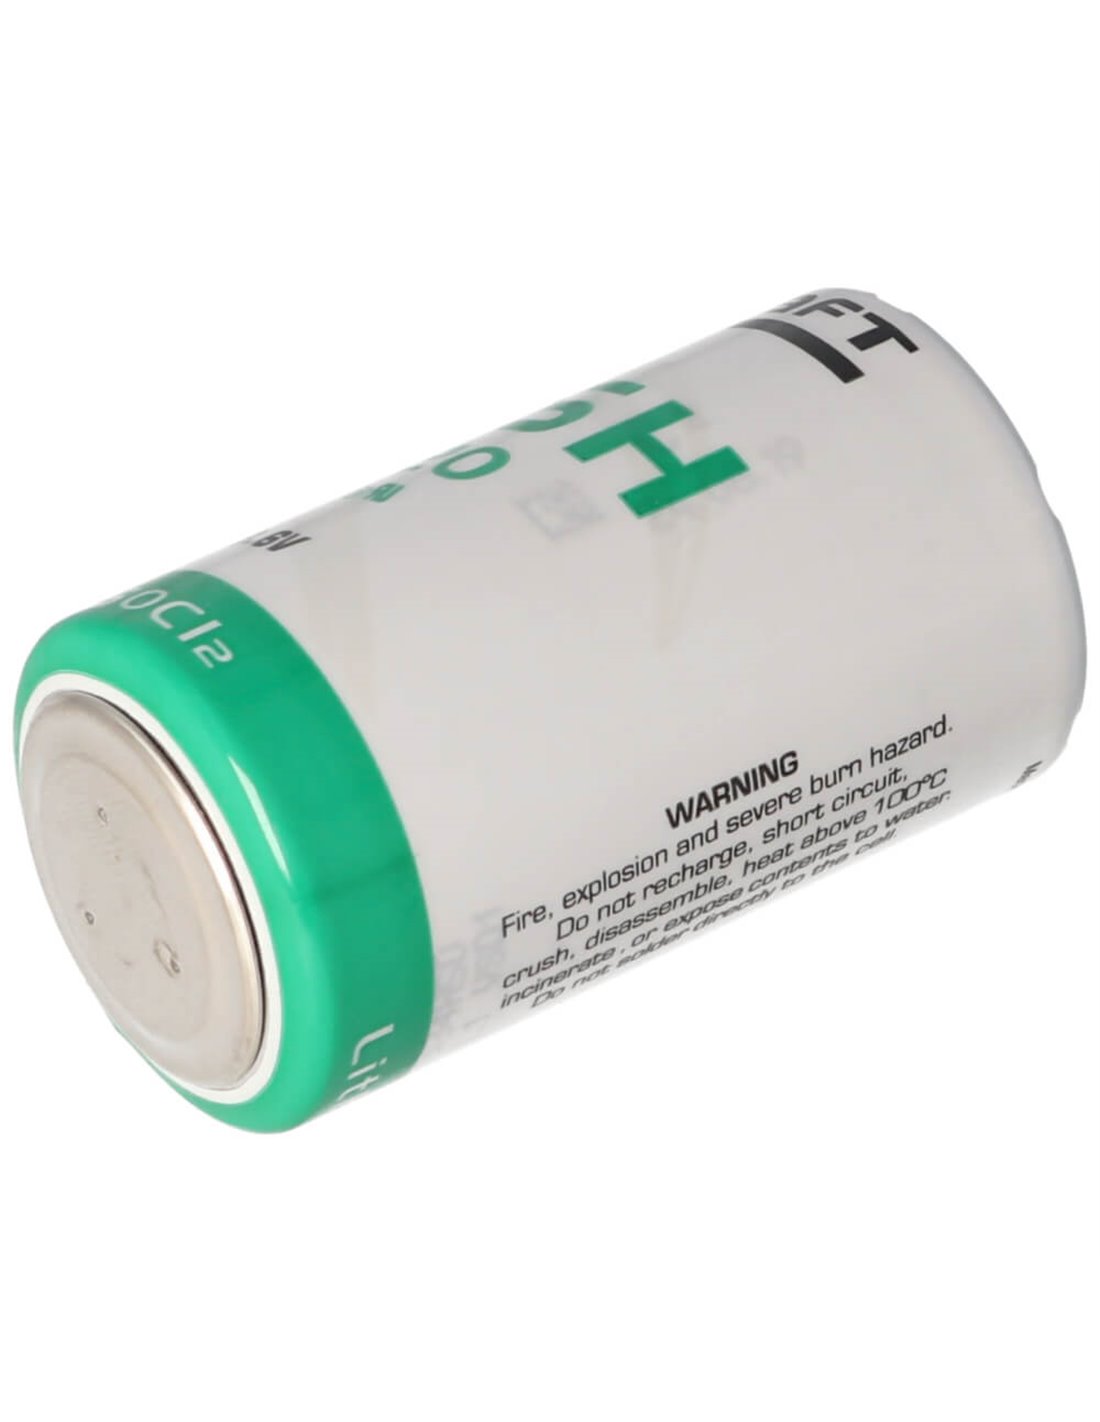 Saft lsh20,D size battery 3.6V, 13000mah